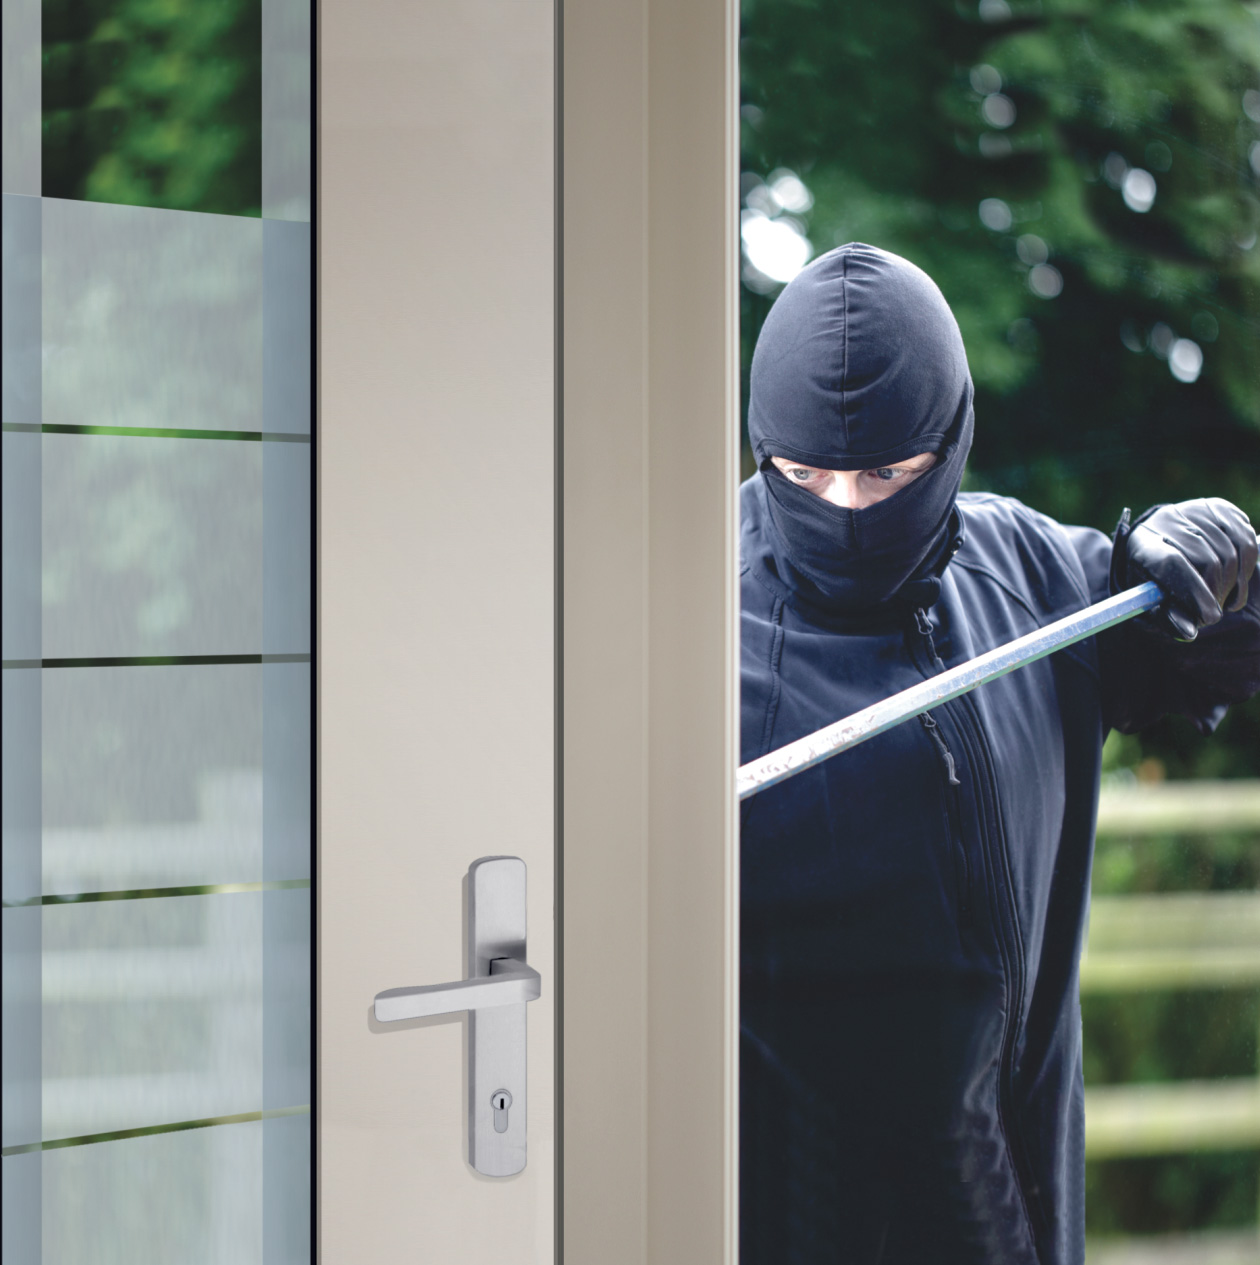 Der Einbrecher versucht durch eine sichere Haustür einzubrechen.